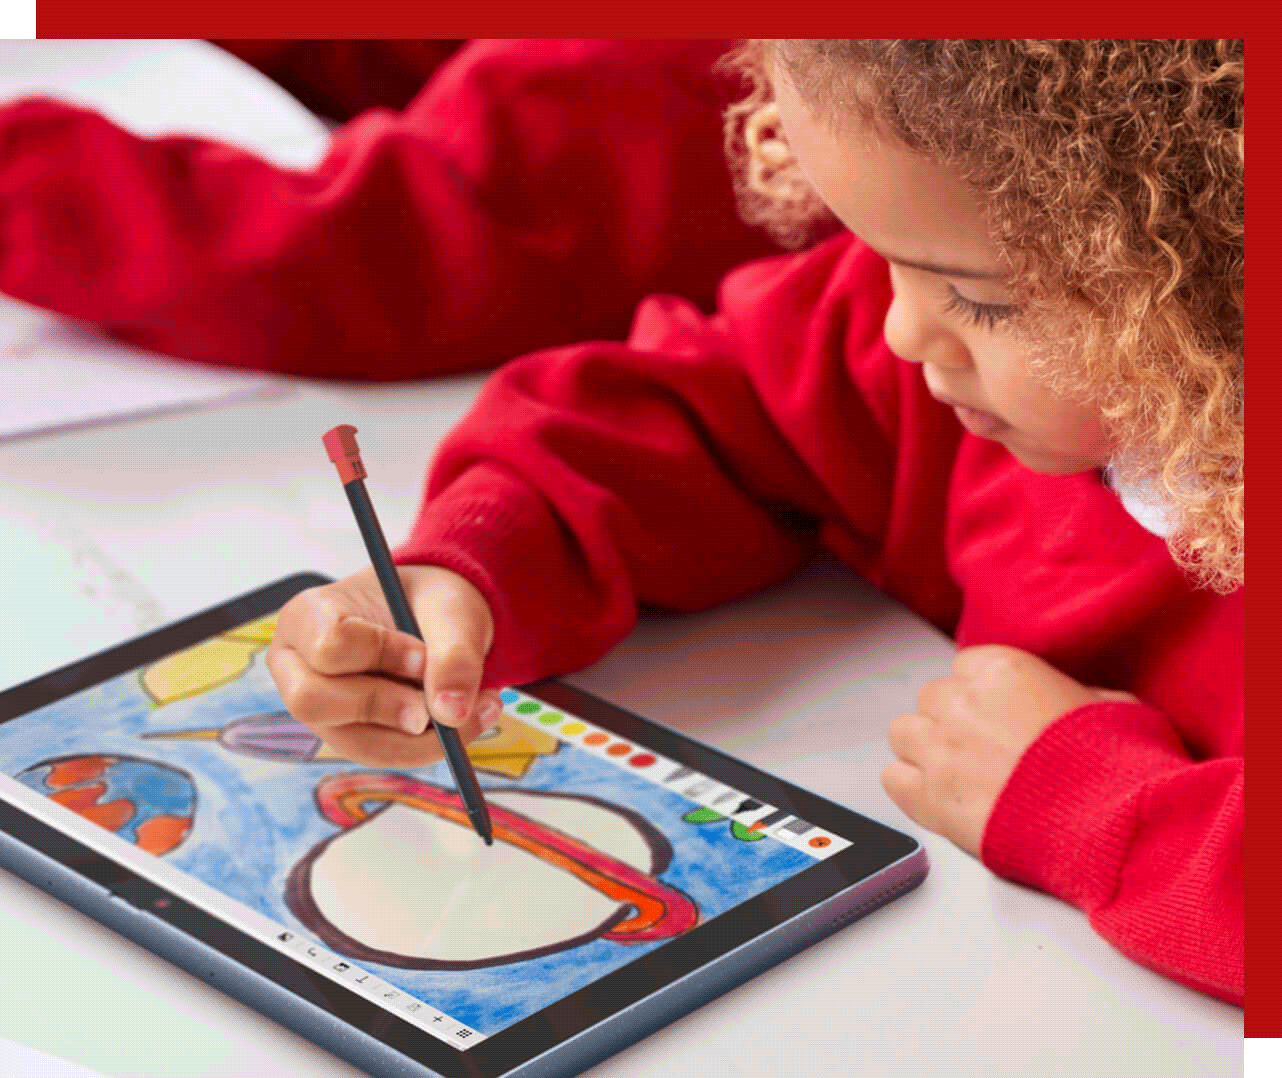 Jeune enfant utilisant un stylet pour dessiner sur une tablette Lenovo 